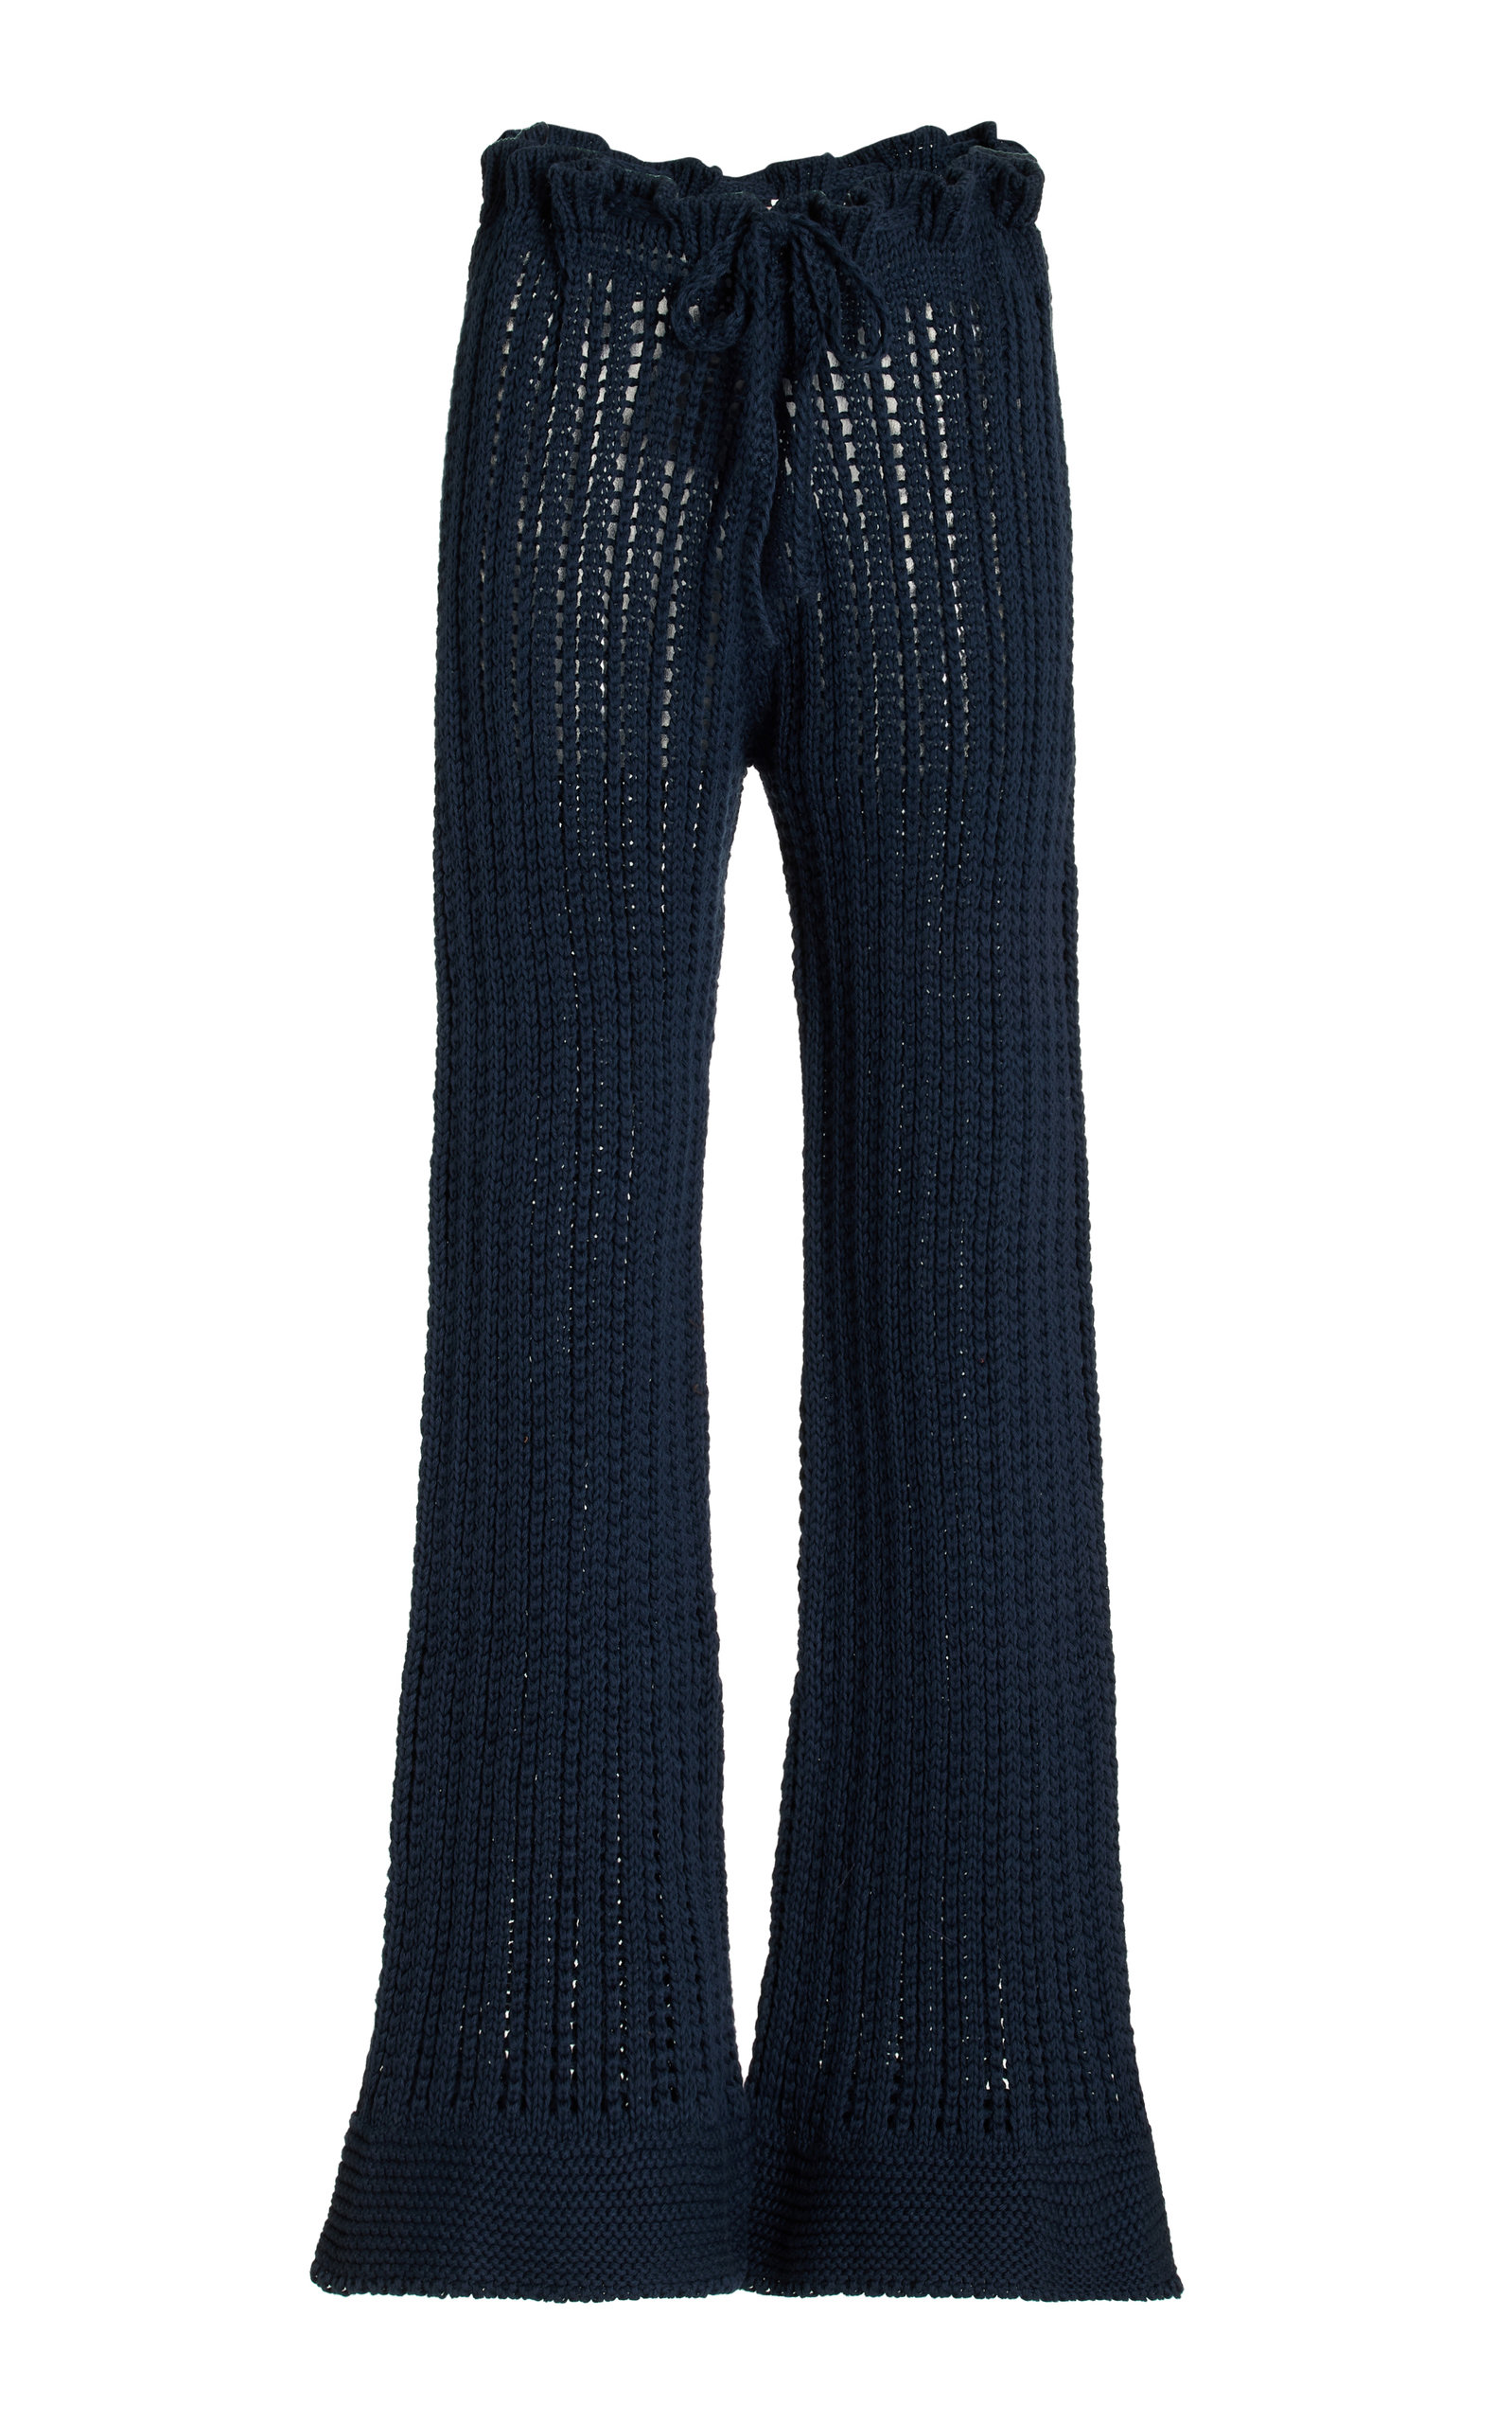 Savannah Morrow Oak Crocheted Cotton Trousers In Navy